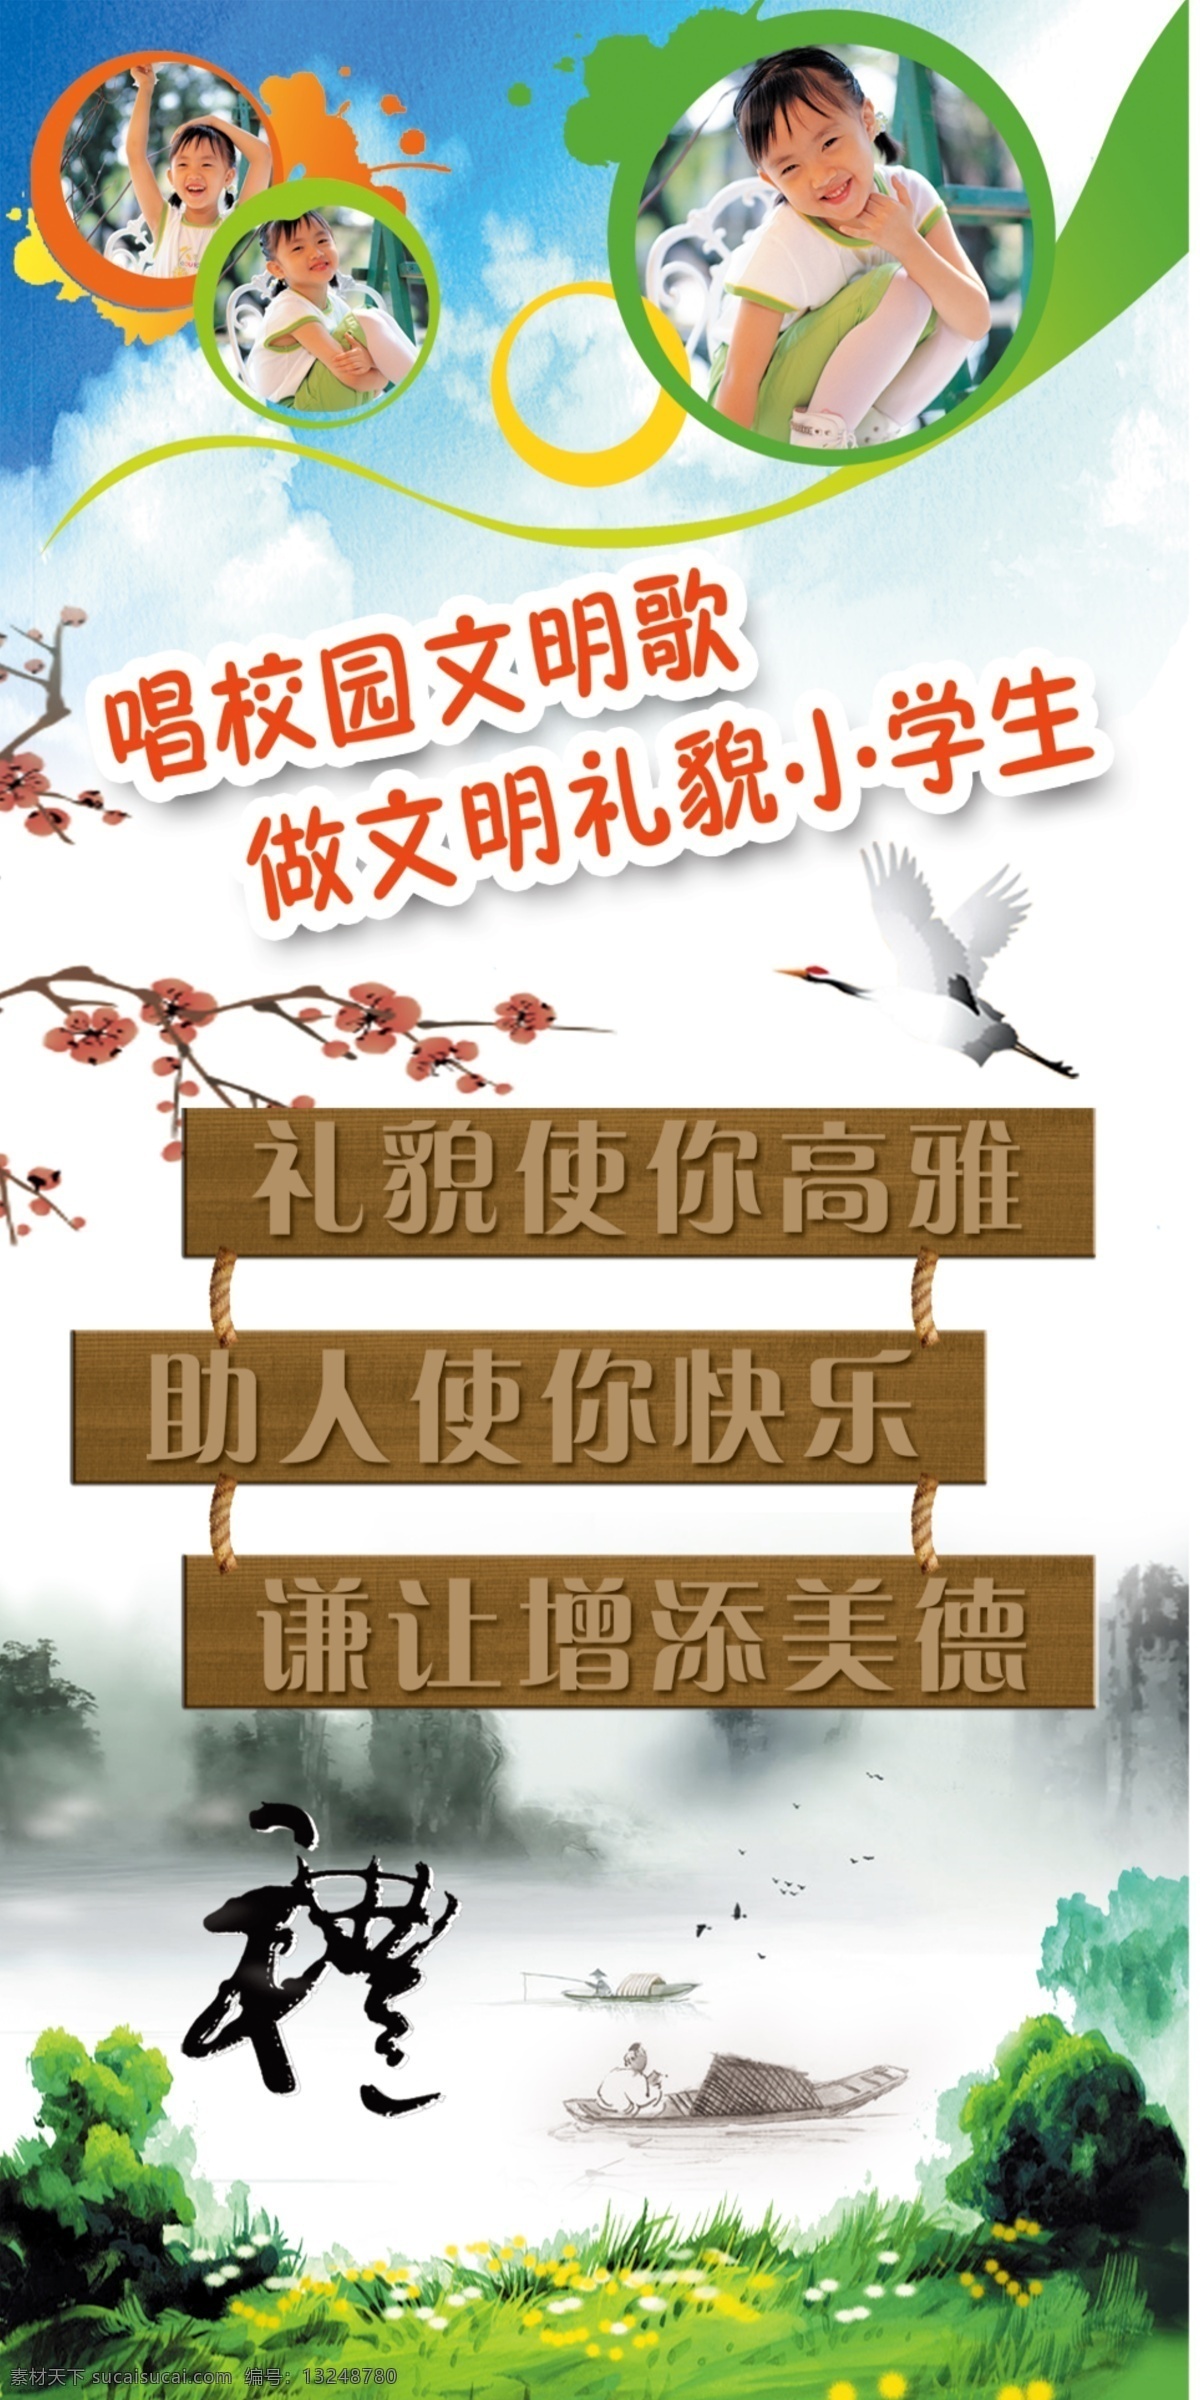 礼貌 学生 中国风 道德礼仪 展板 学校展板设计